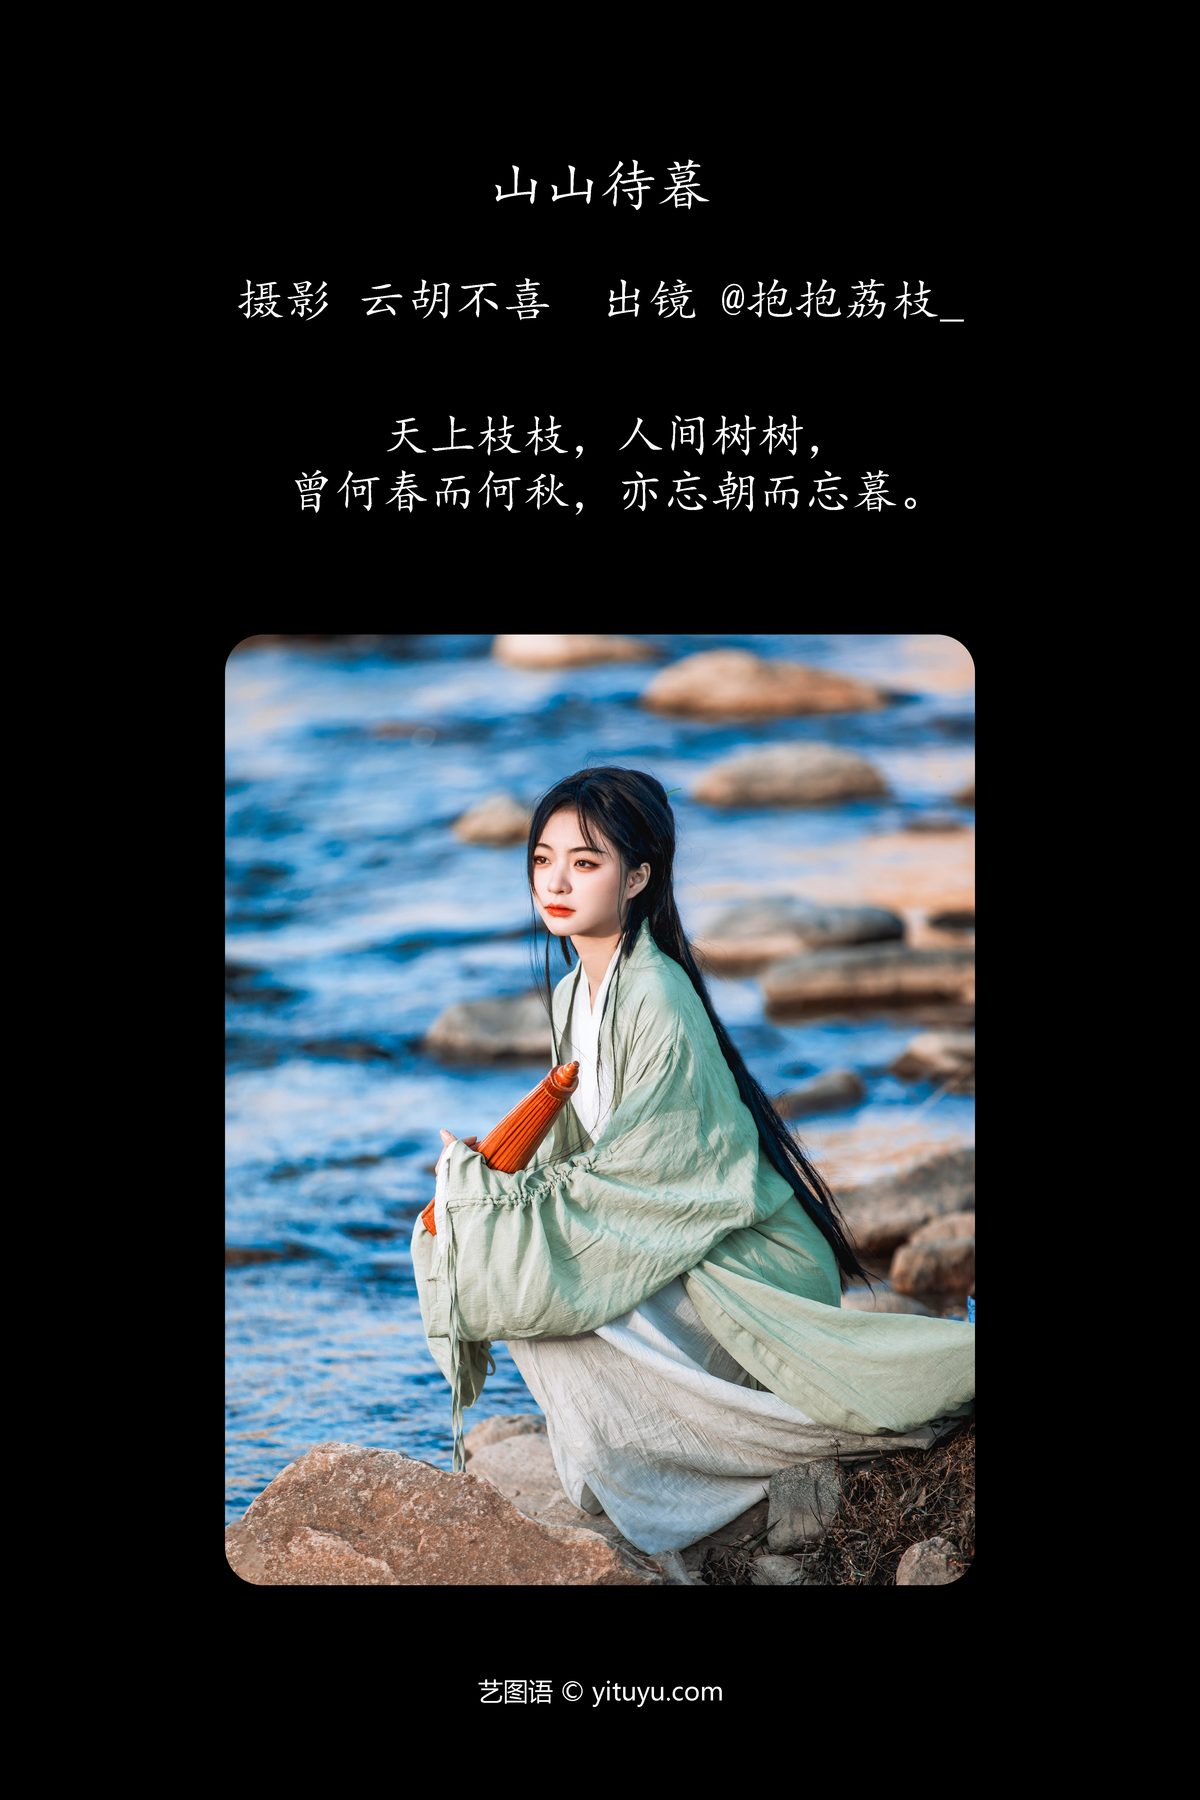 YiTuYu艺图语 Vol 6202 Bao Bao Li Zhi 0002 8072684888.jpg